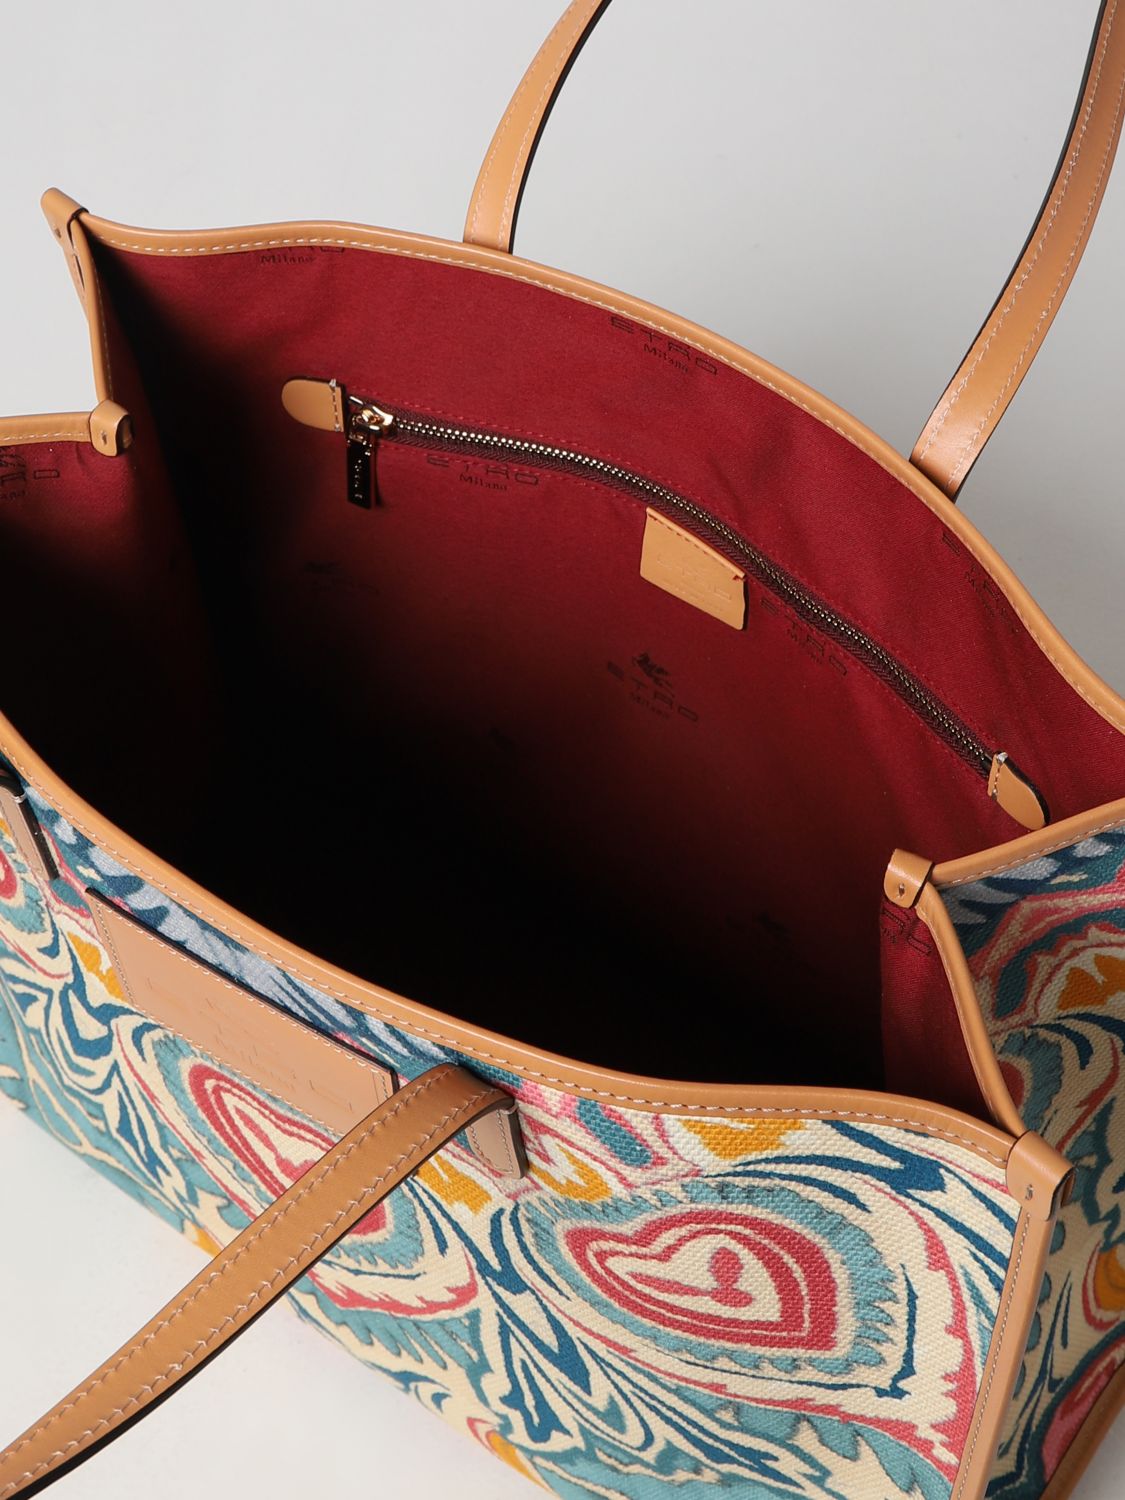 Etro - Tote bag for Woman - Multicolor - 1P0487111-0800